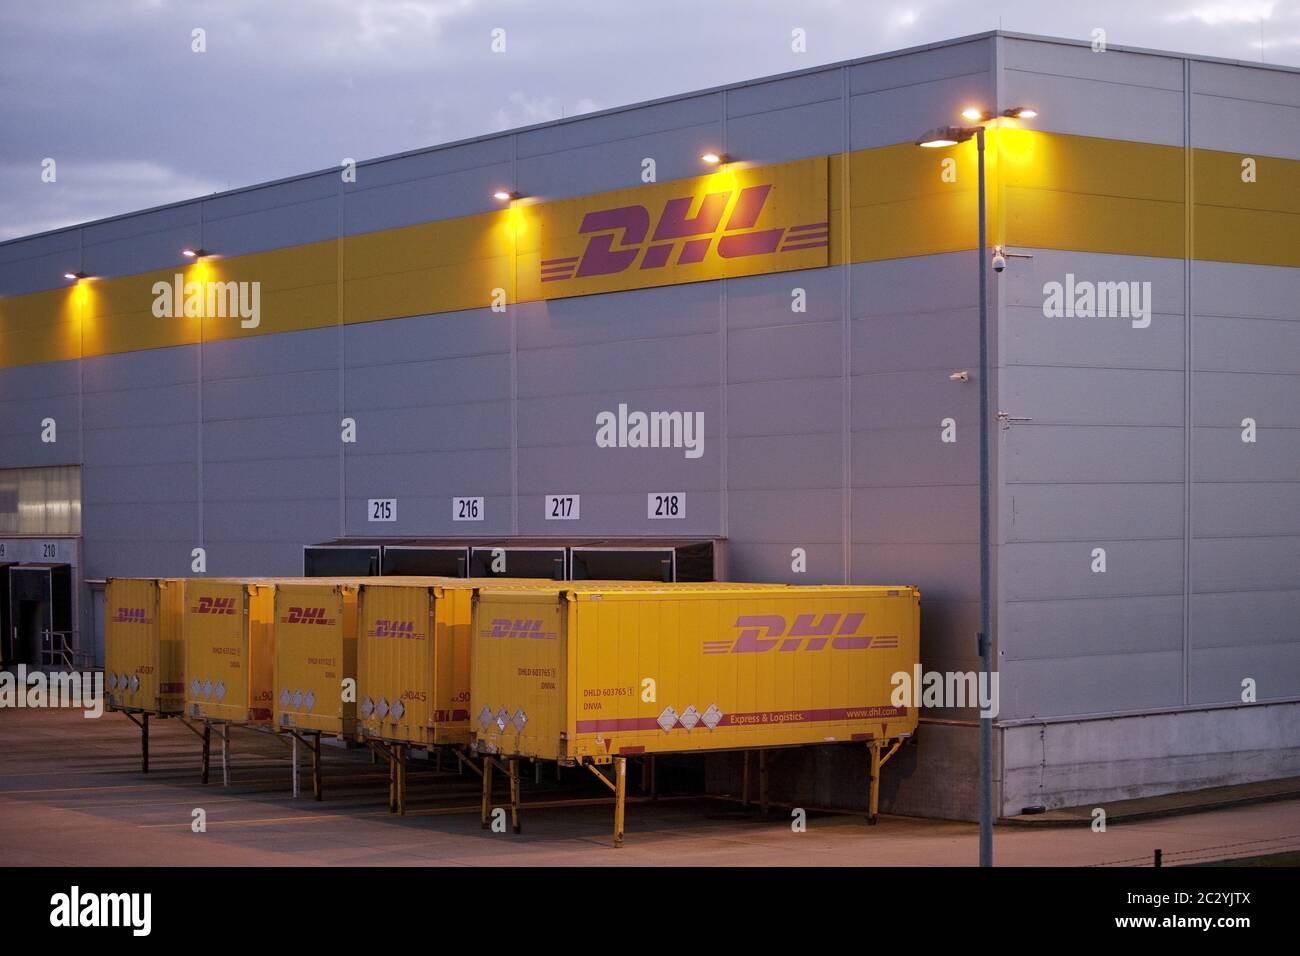 DHL-Distributionszentrum in der Nähe des Amazon Logistikzentrums, Twilight, Rheinsberg, Deutschland, Europa Stockfoto